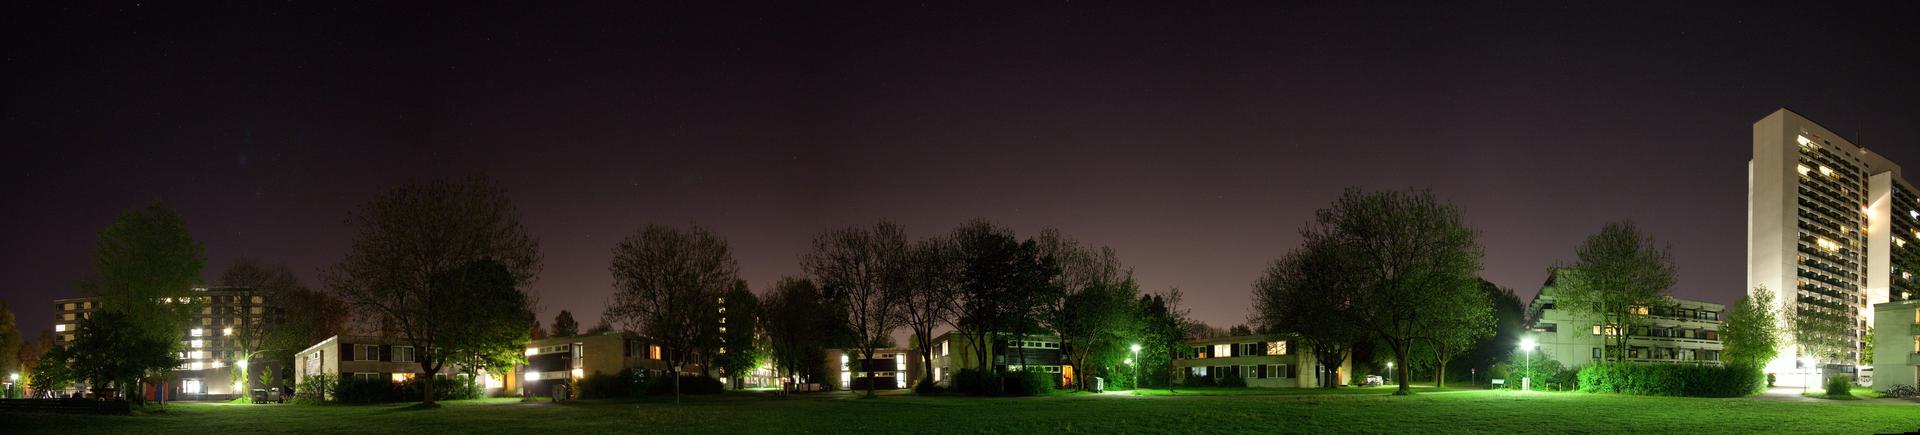 Studentenstadt bei Nacht